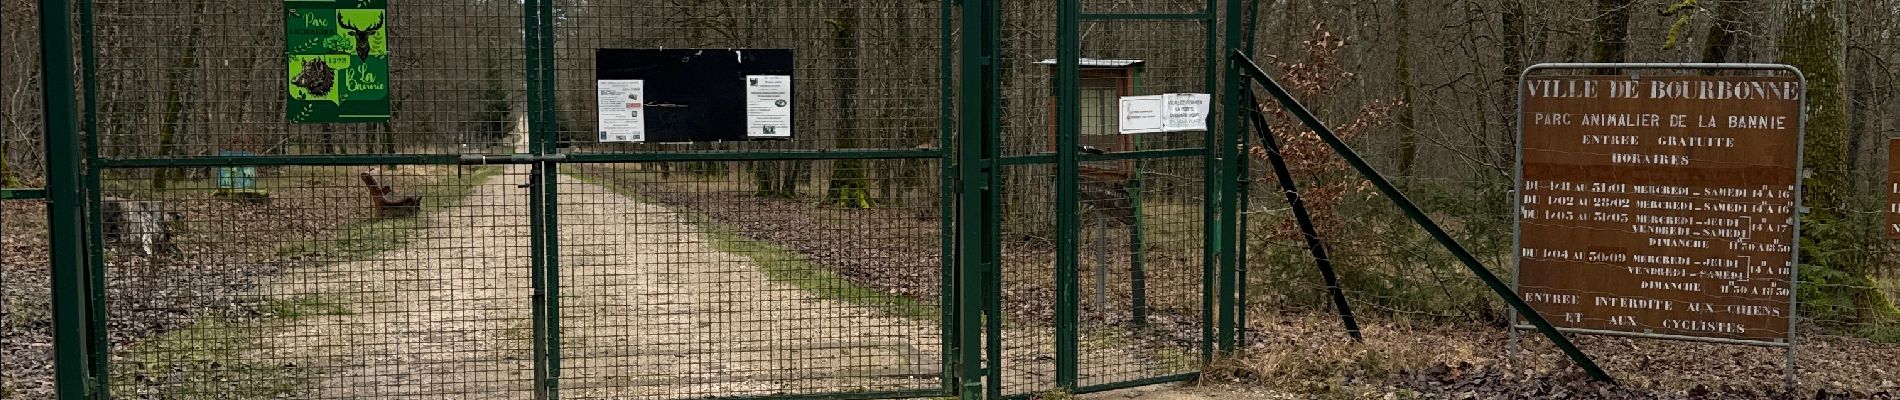 Tour  Coiffy-le-Haut - Trace pour parc animalier la bannie - Photo